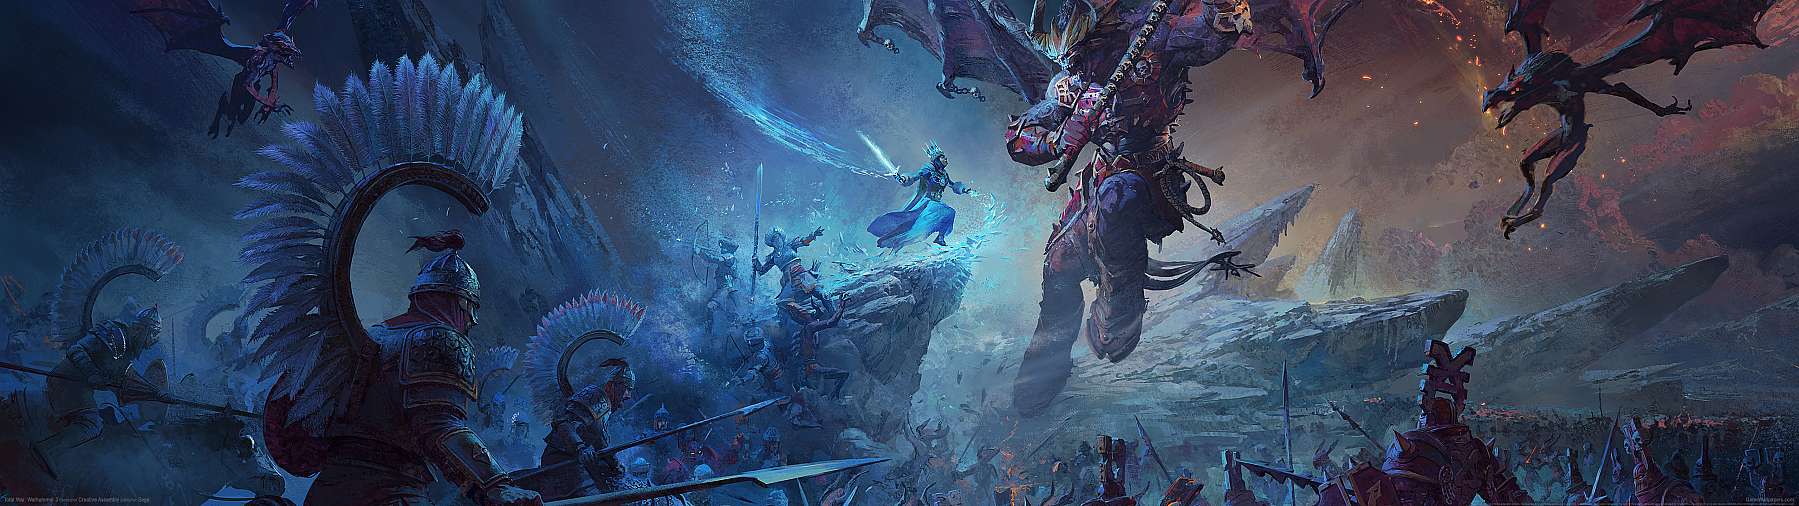 Total War: Warhammer 3 superwide achtergrond 01